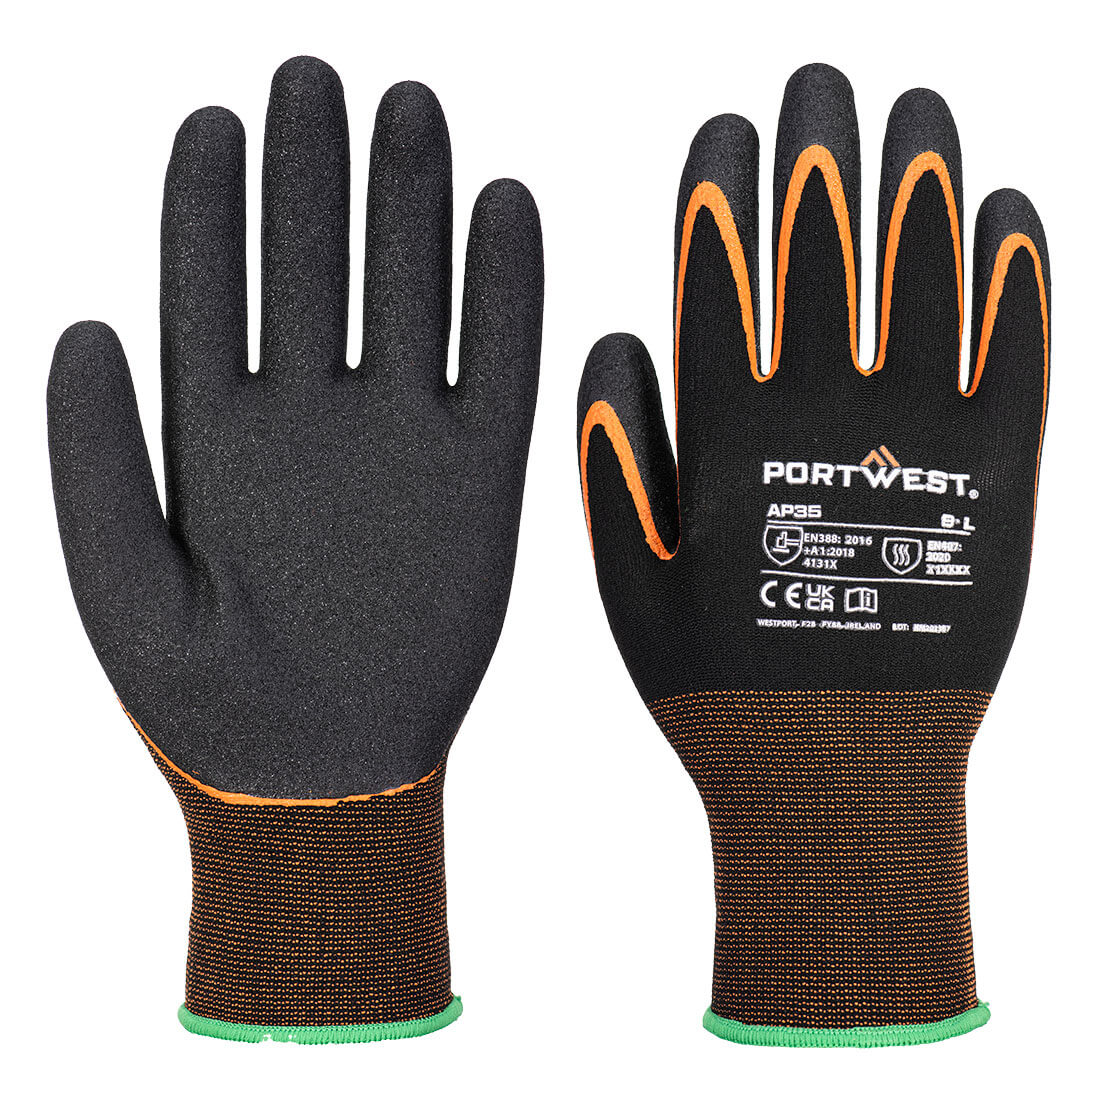 Portwest handschoen AP35 Grip 15 nitril dubbele palm hitte zwart-oranje(K1)